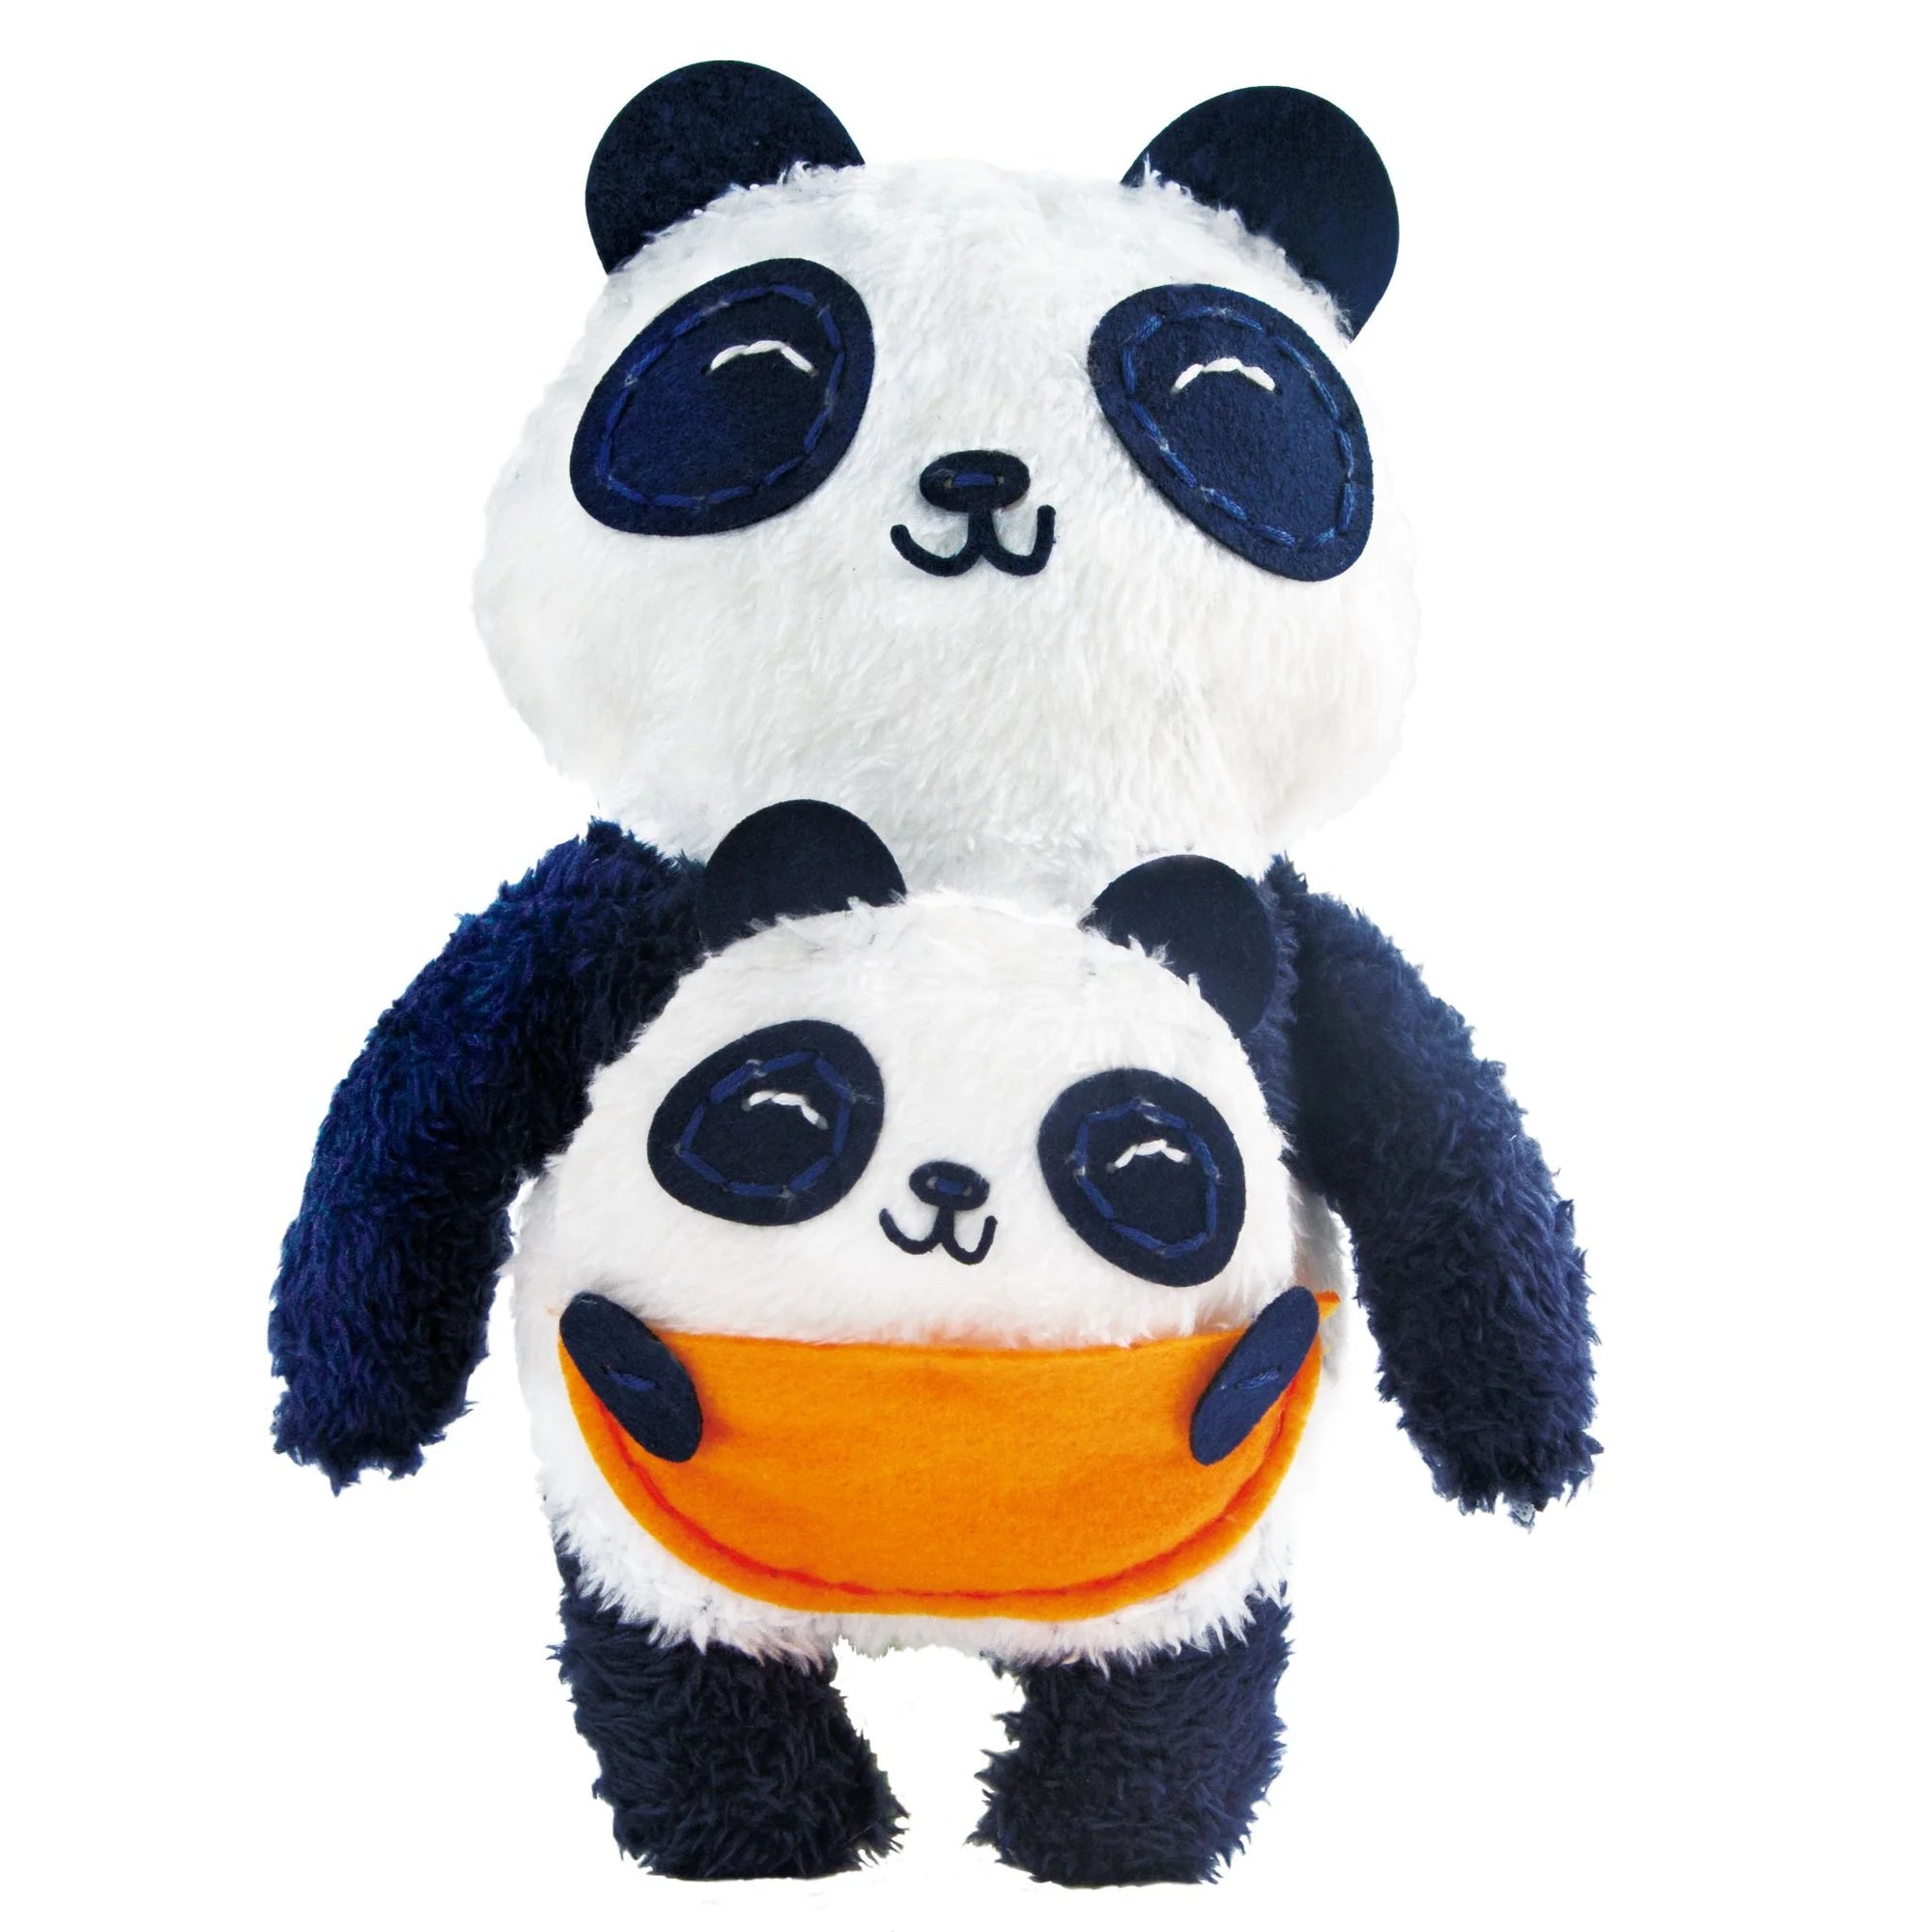 Avenir DIY Sewing Doll - Panda